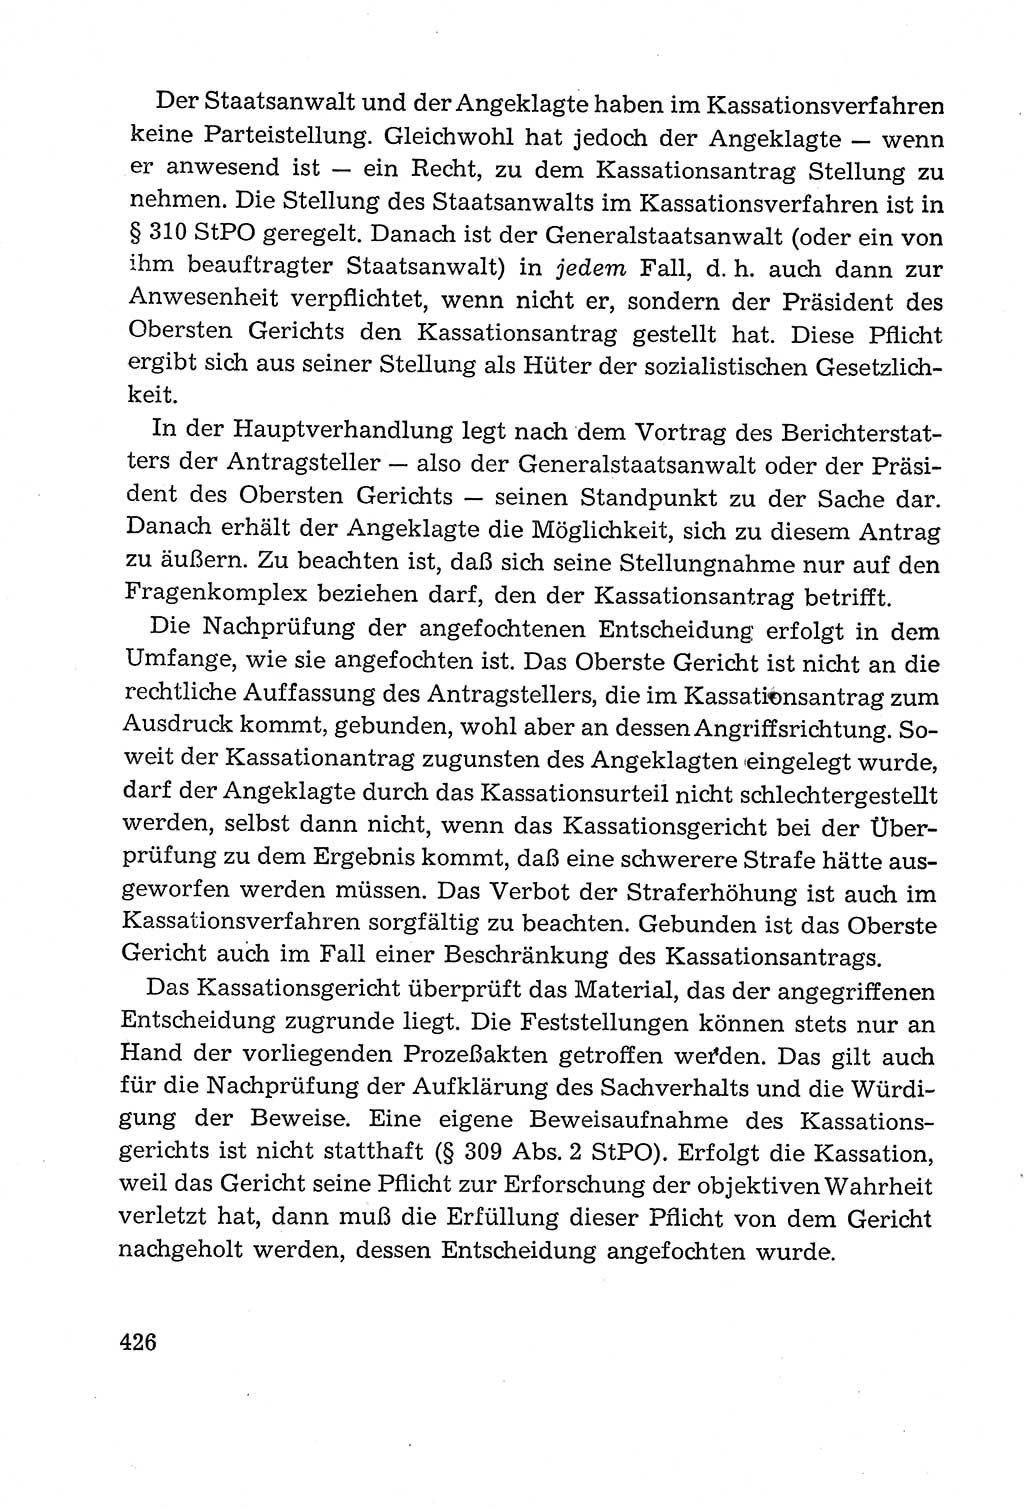 Leitfaden des Strafprozeßrechts der Deutschen Demokratischen Republik (DDR) 1959, Seite 426 (LF StPR DDR 1959, S. 426)